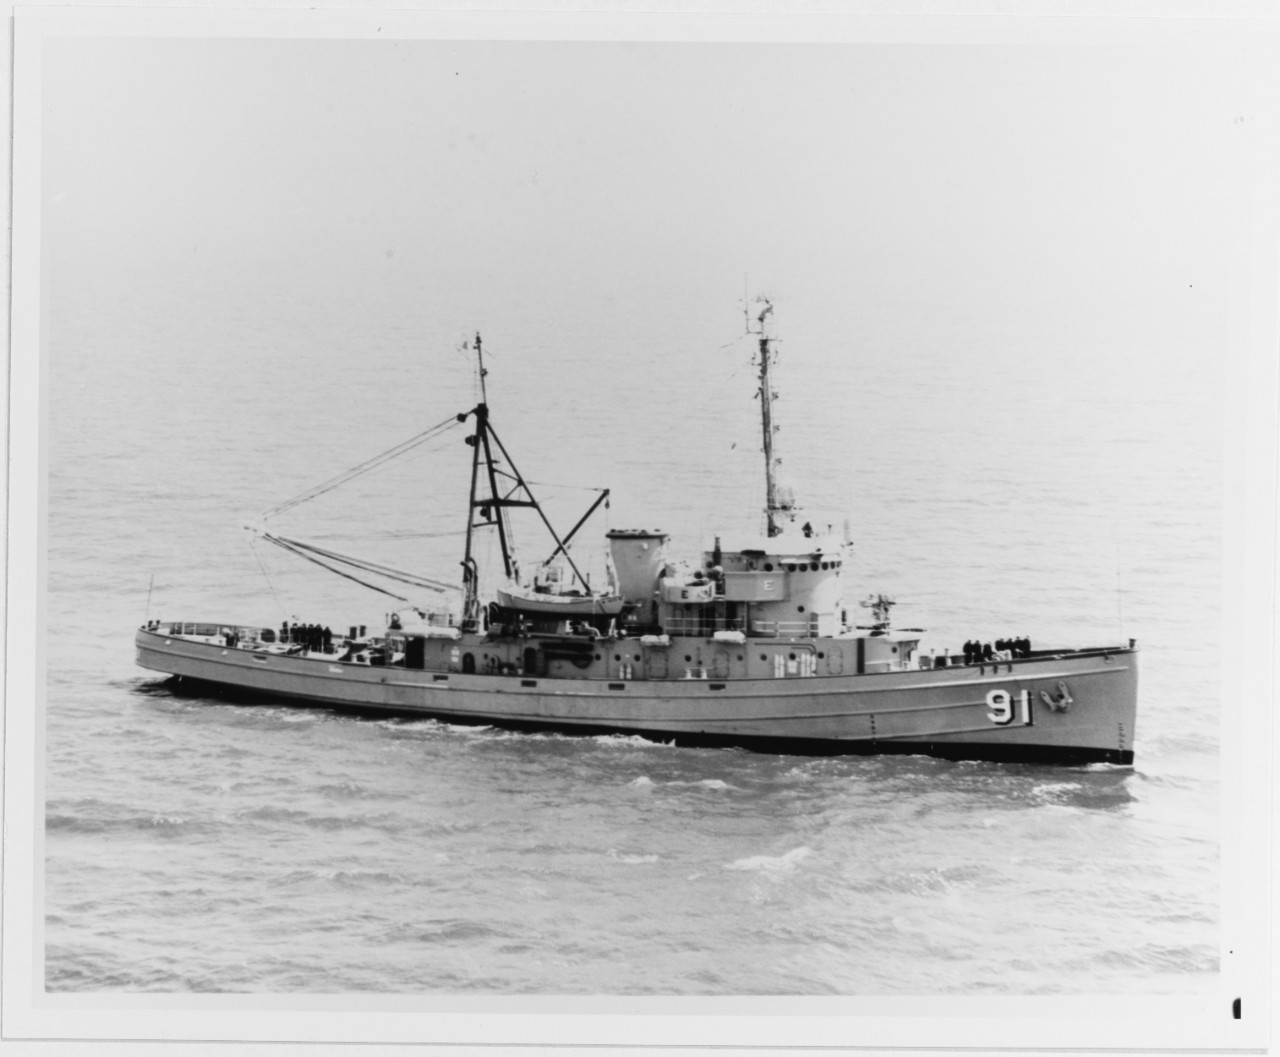 USS SENECA (ATF-91)